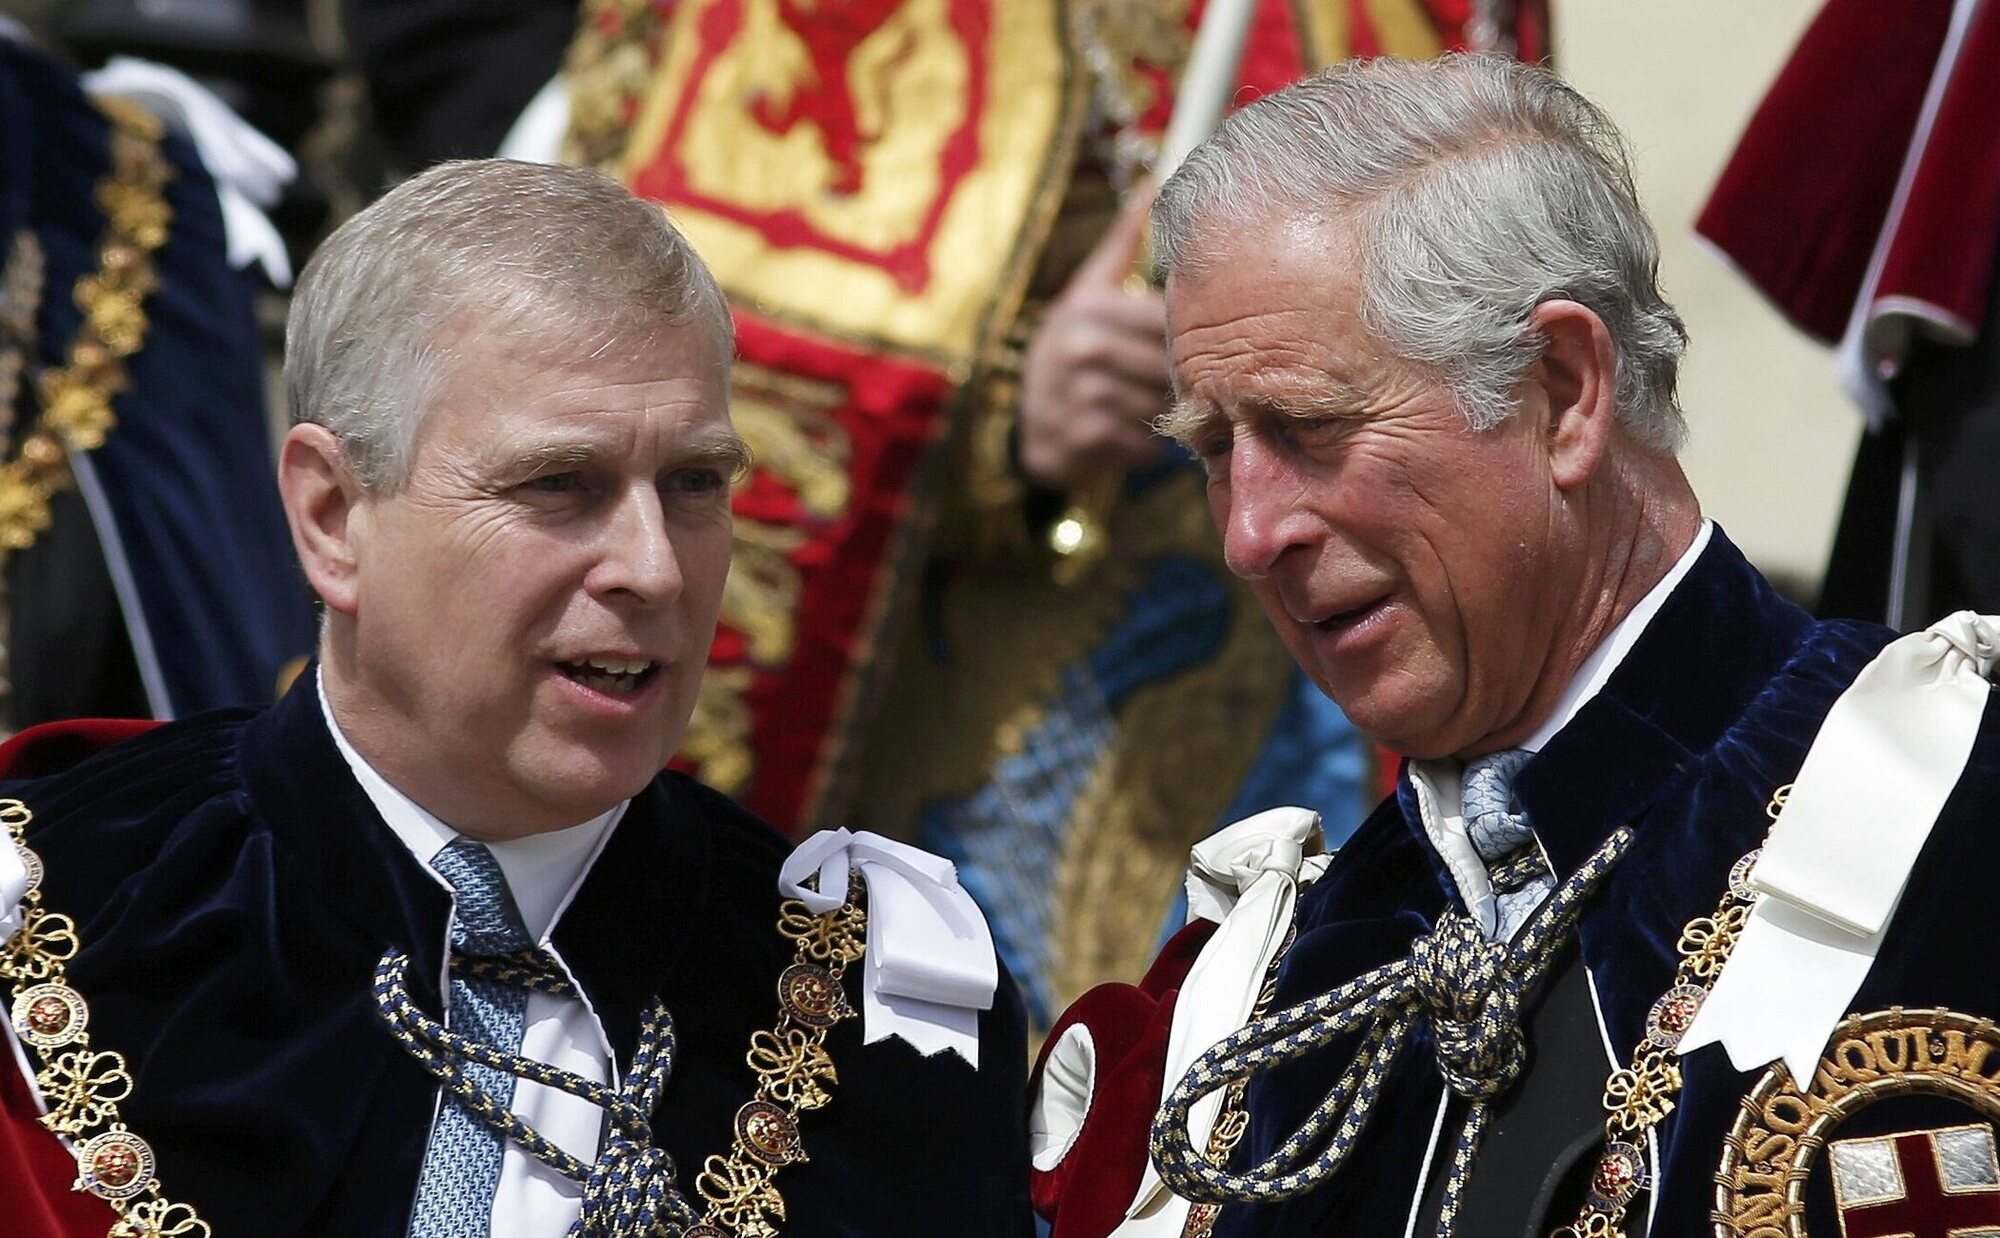 El Rey Carlos III planea sacar al Príncipe Andrés de la Familia Real tras su vinculación con Jeffrey Epstein